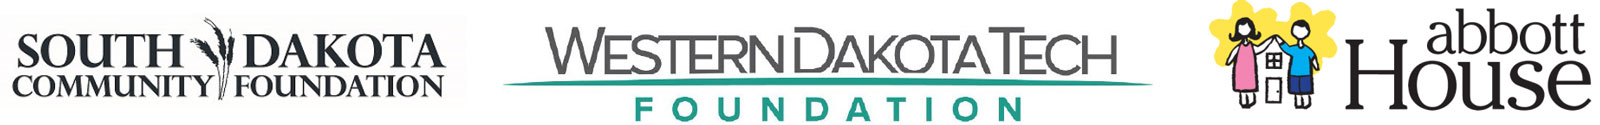 Sponsors: South Dakota Community Foundation, Western Dakota Foundation and Abbott House.